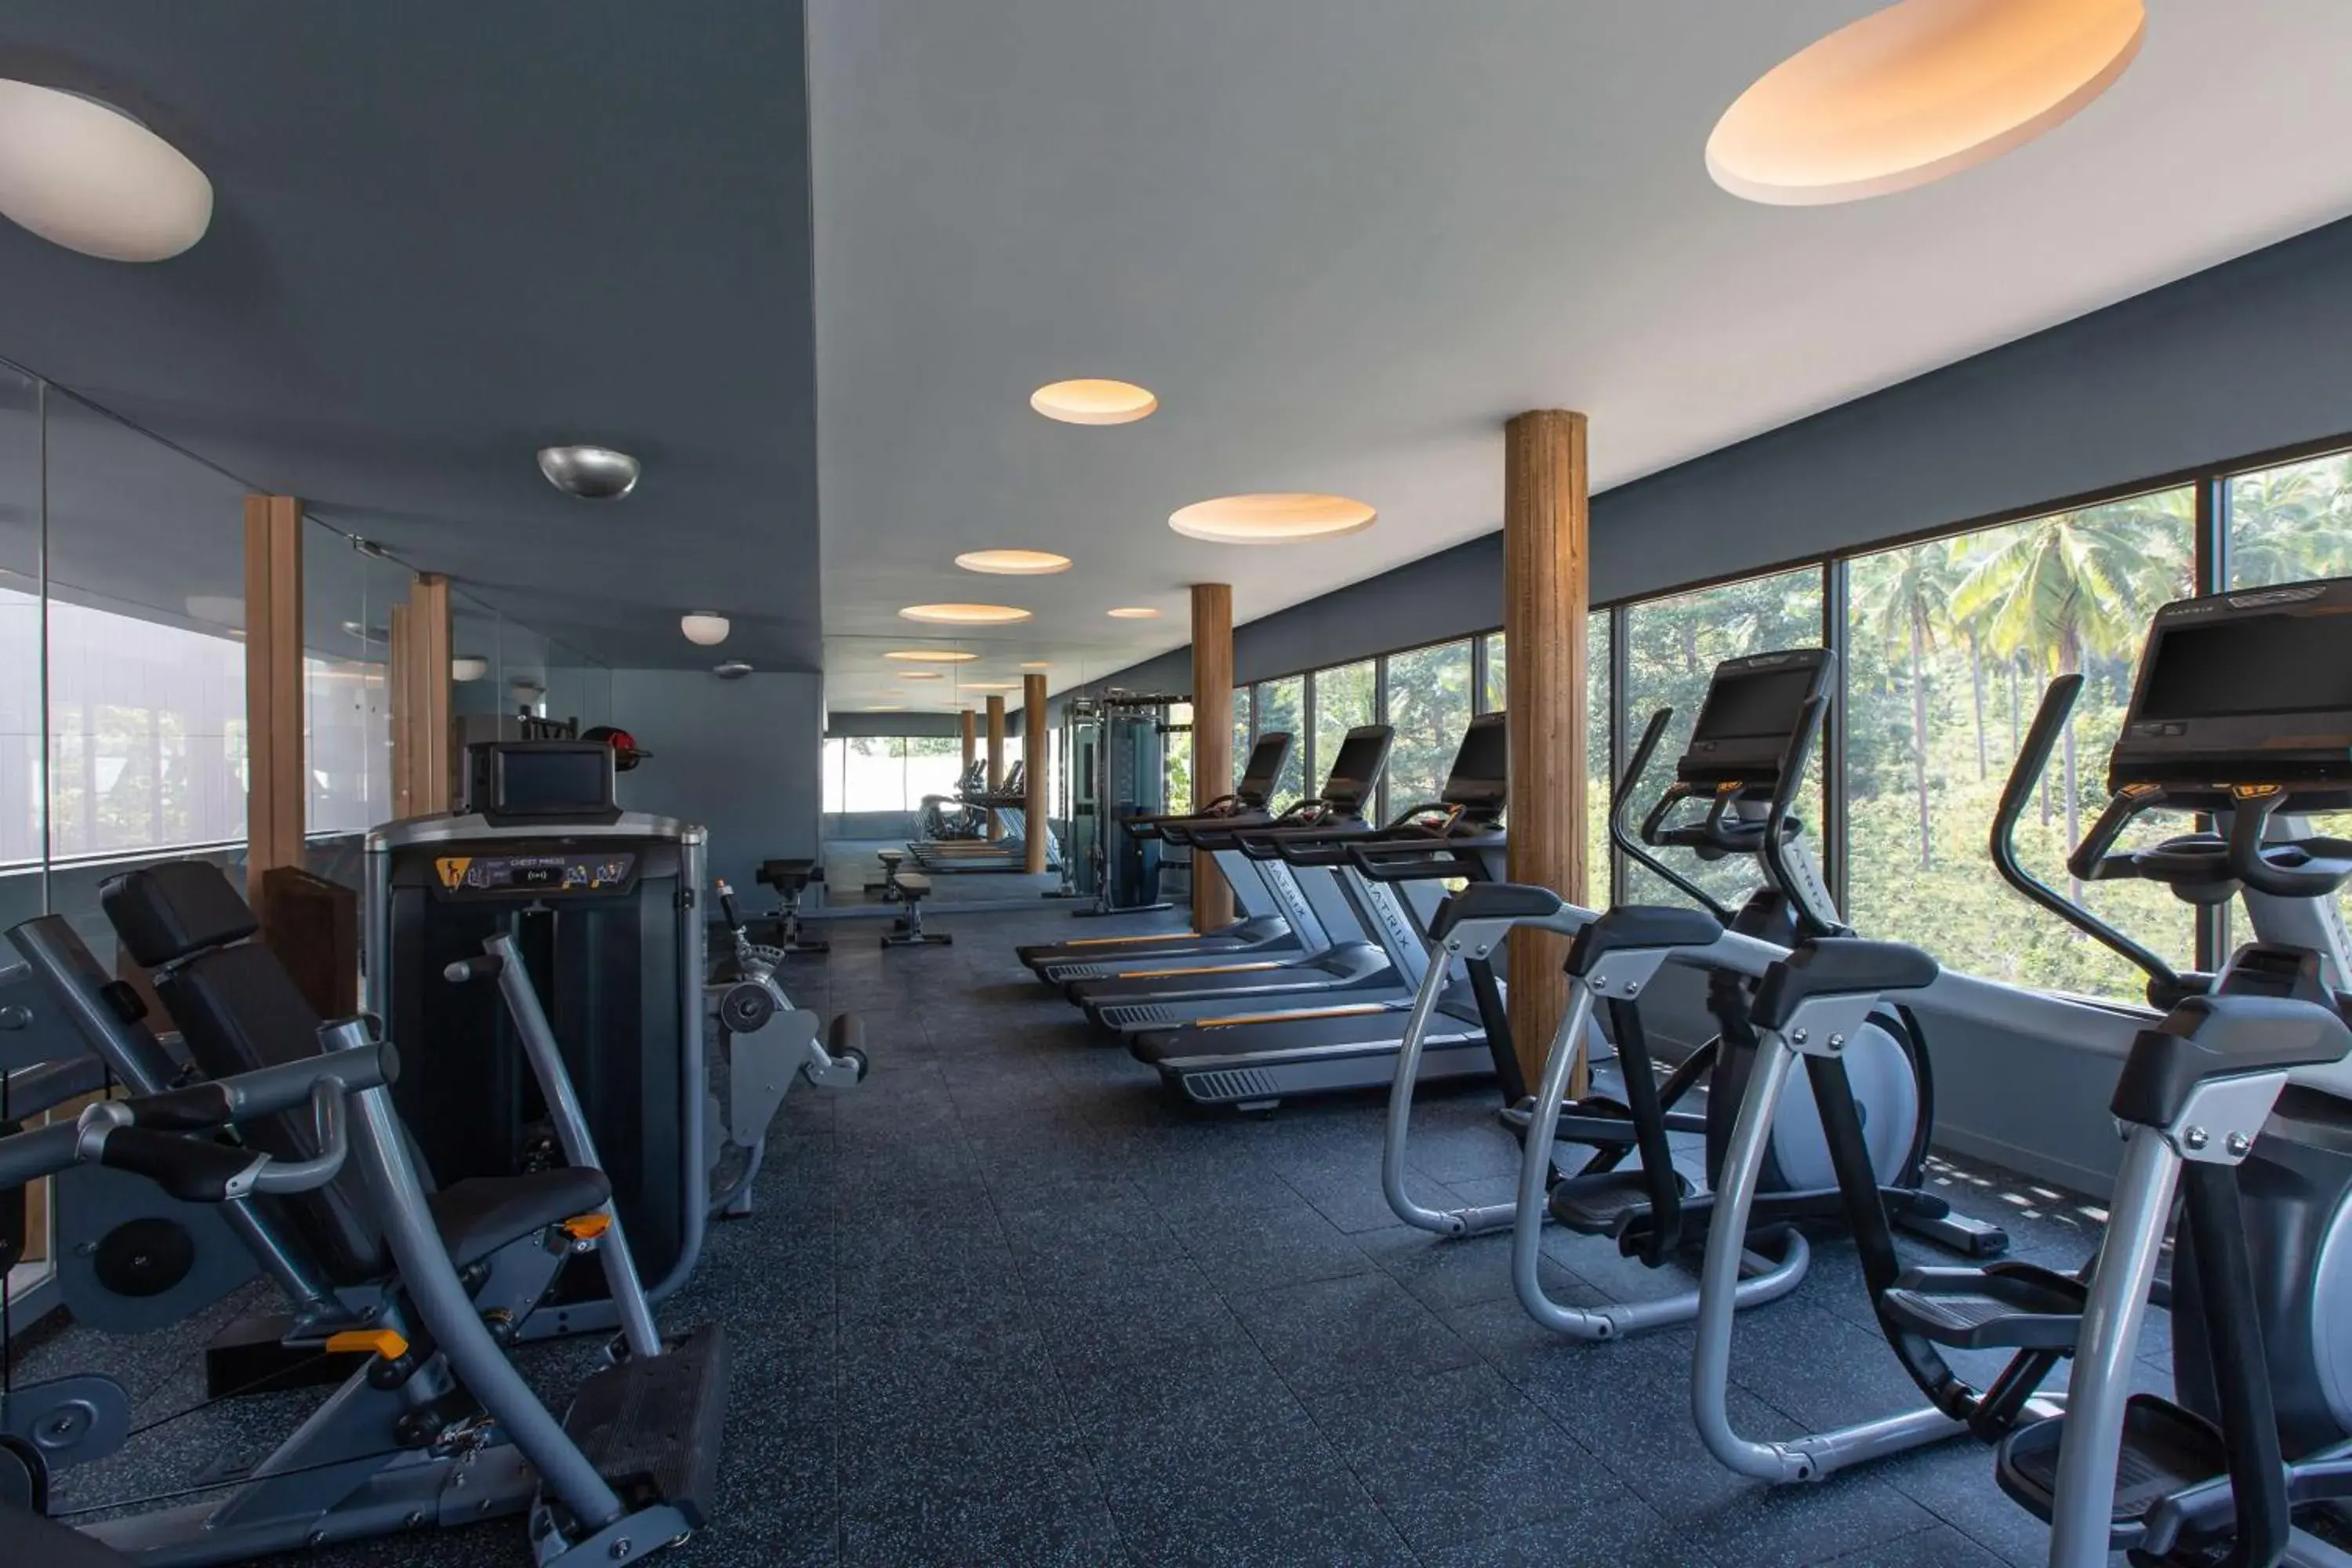 Fitness centre/facilities, Fitness Center/Facilities in Hyatt Regency Koh Samui- SHA Extra Plus